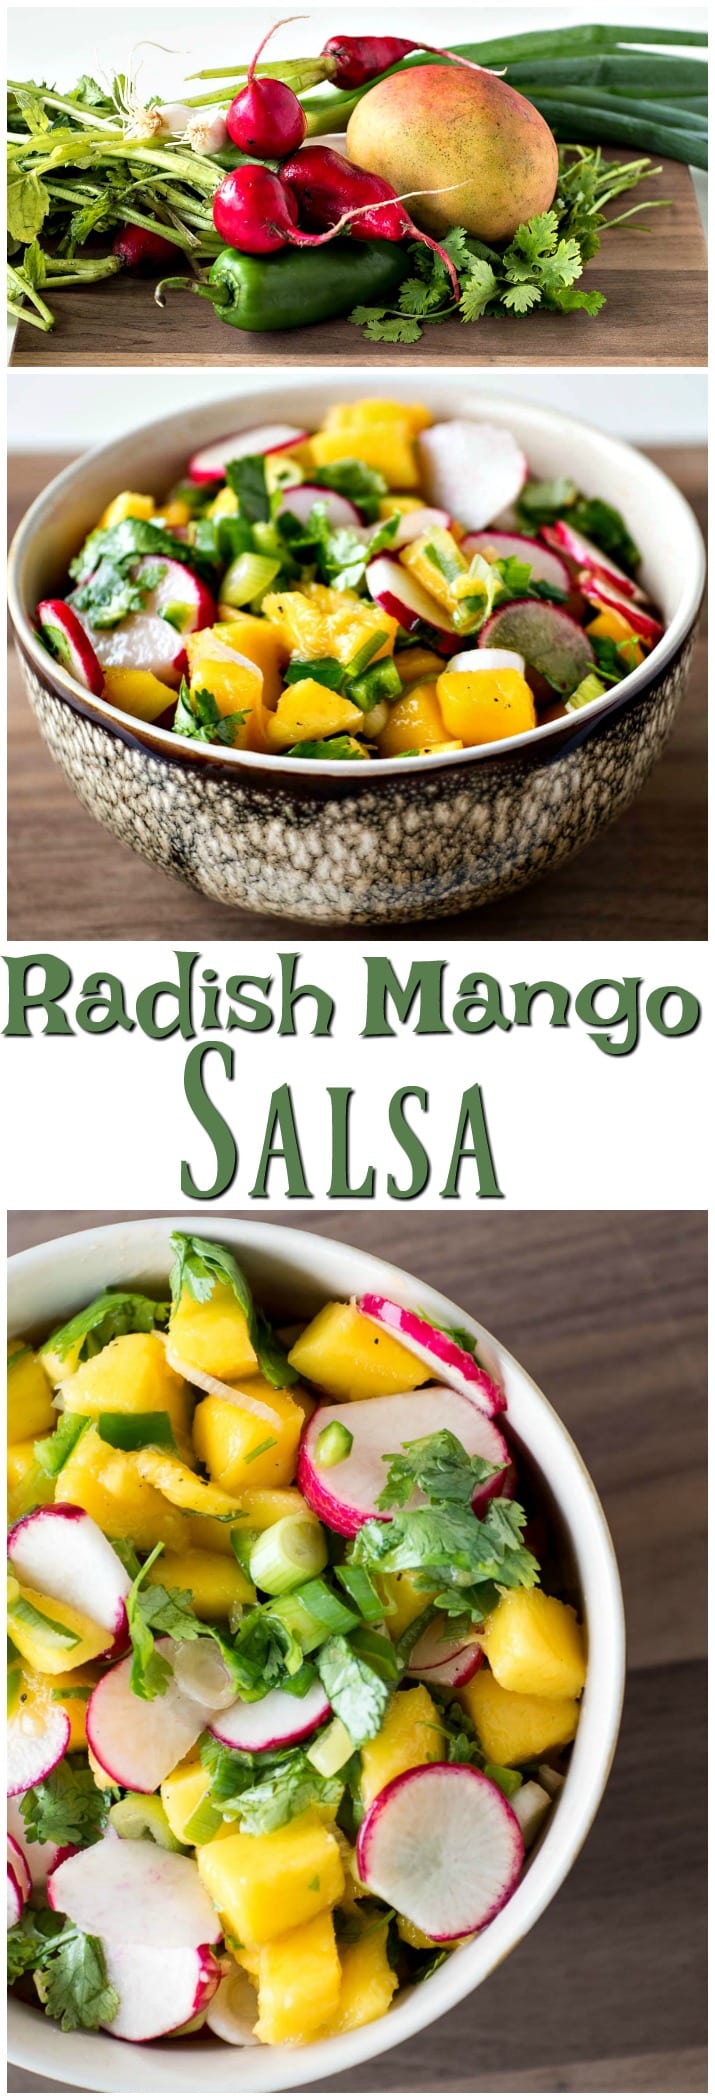 Radishes mango salsa with radishes and radishes.